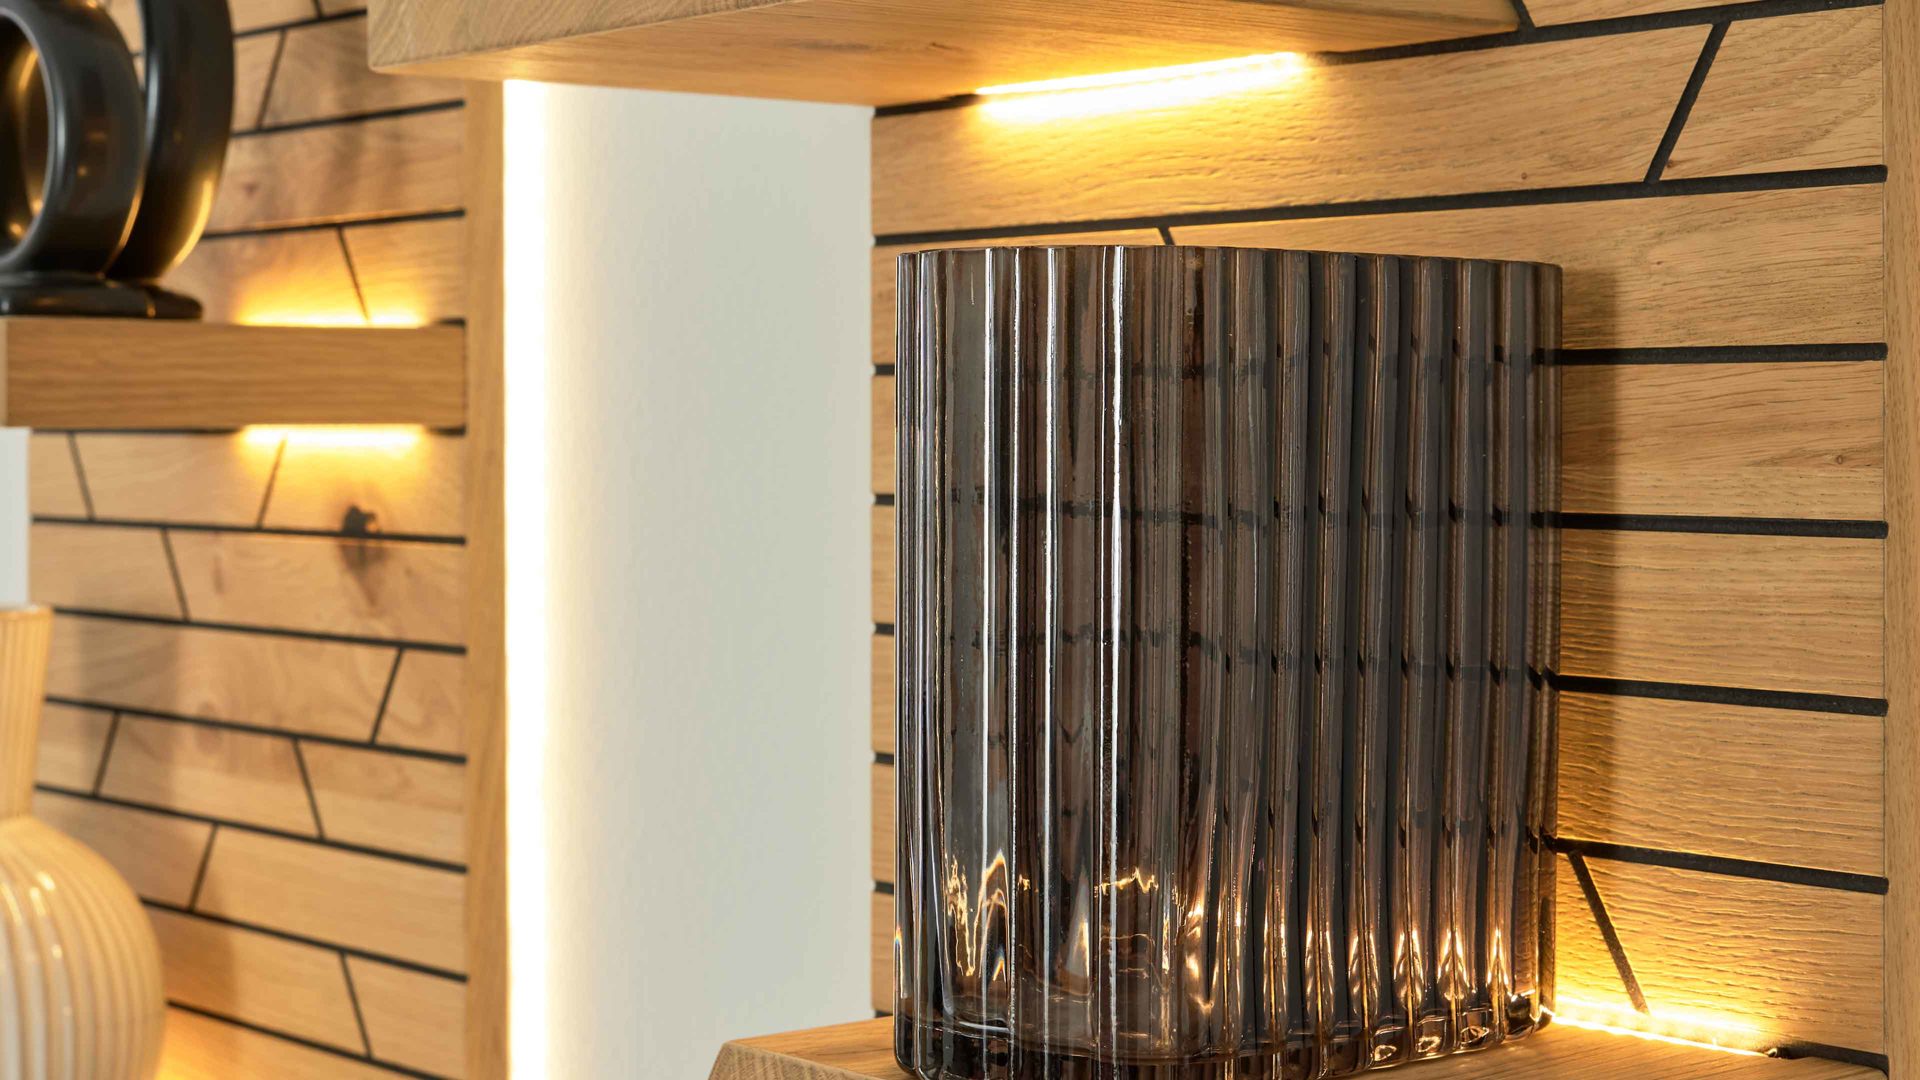 LED-Beleuchtung Interliving aus Kunststoff in Weiß Interliving Wohnzimmer Serie 2108 - Holzboden-Beleuchtung 44-44 zweiteilig